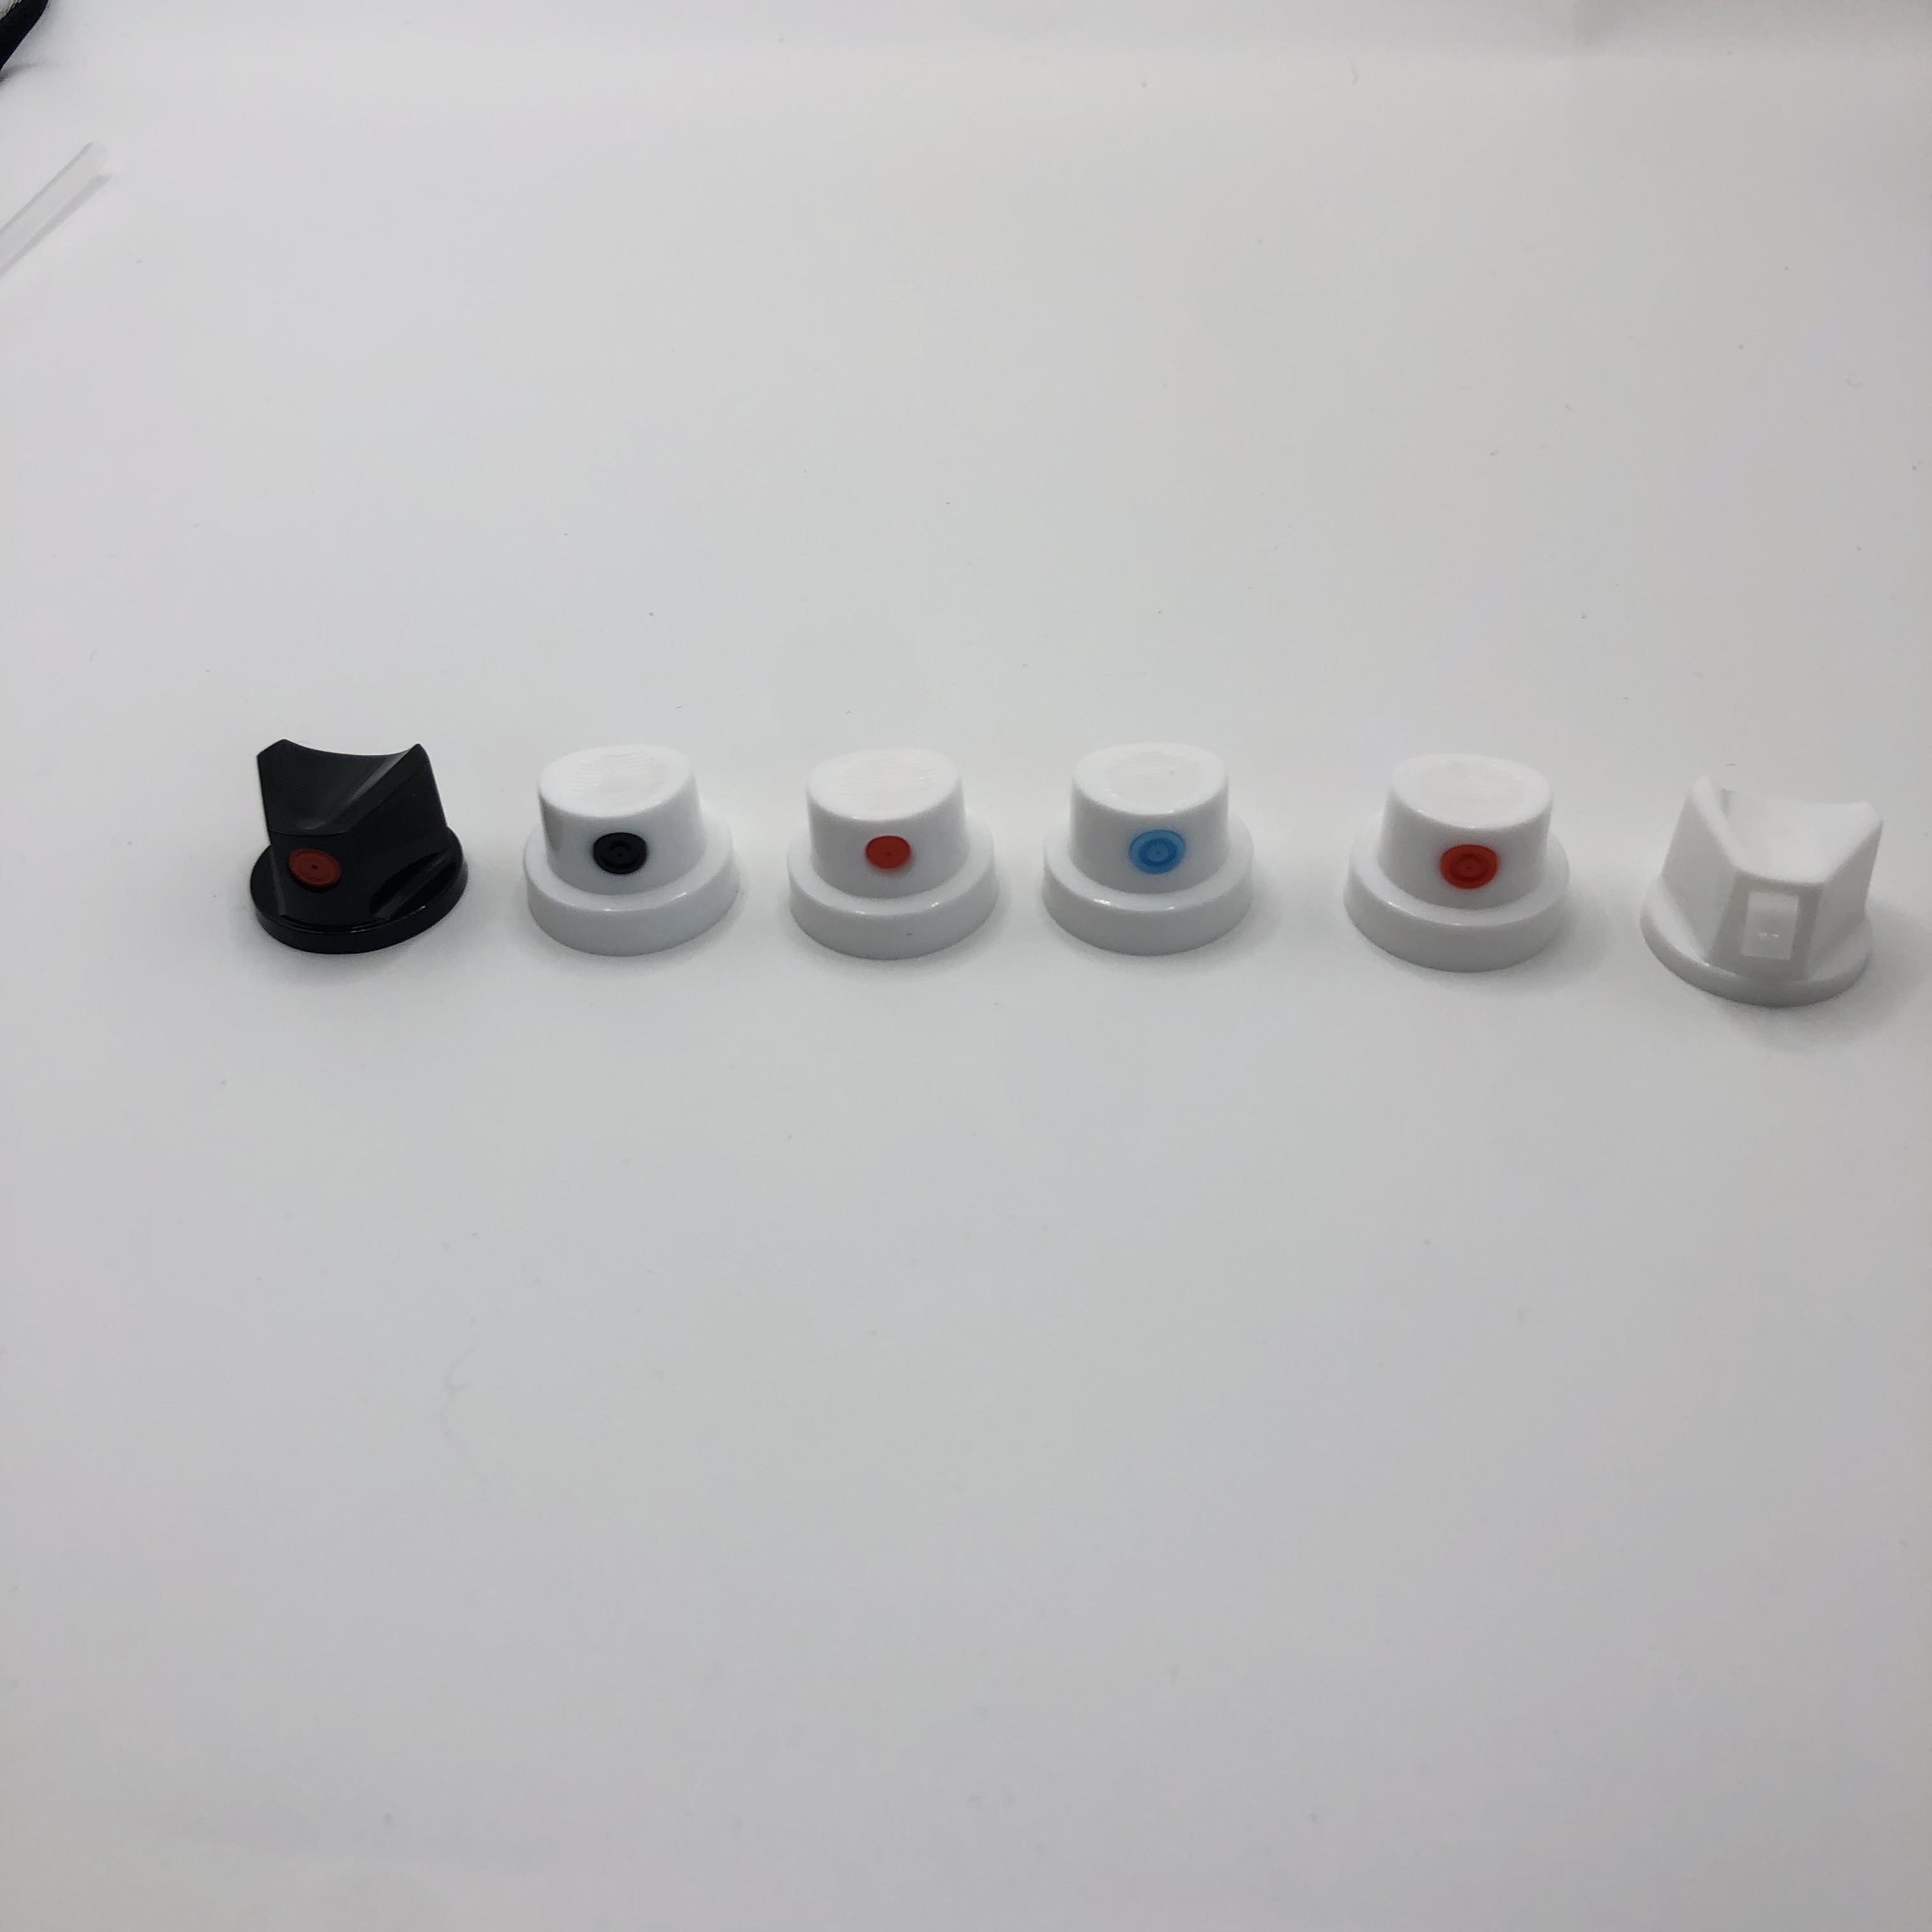 Svestrana mlaznica za nanošenje boje - širok raspon primjena s podesivim uzorkom raspršivanja i kompatibilan s različitim sustavima boje